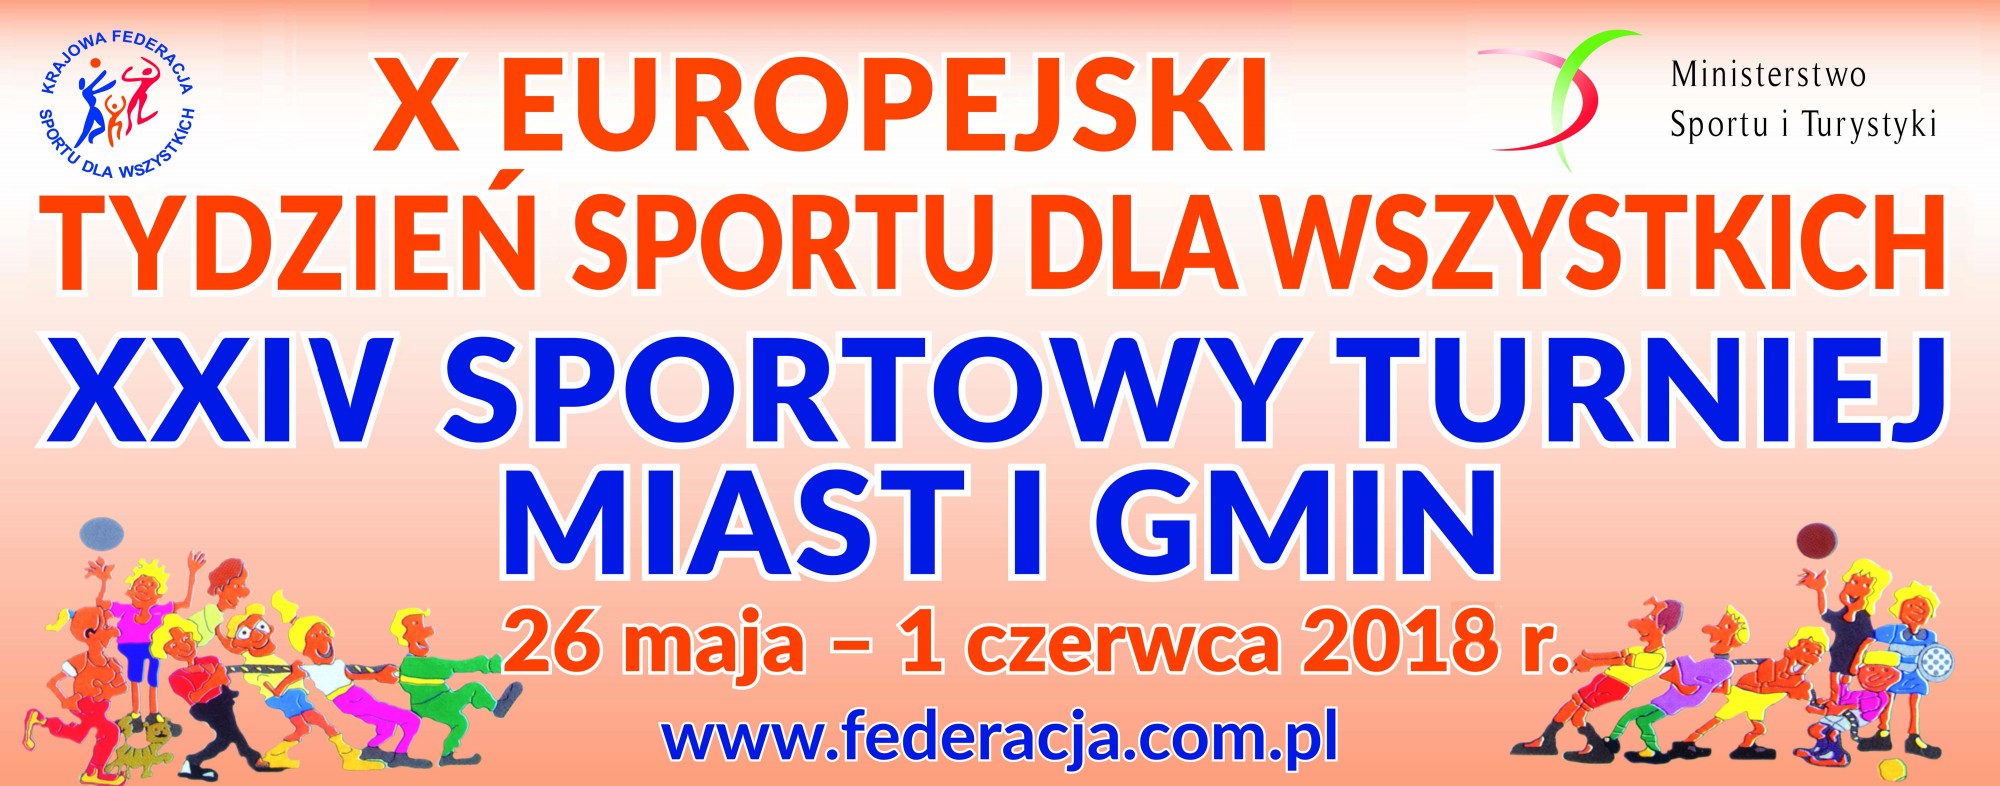 X Europejski Tydzień Sportu dla wszystkich i XXIV Sportowy Turniej Miast i Gmin